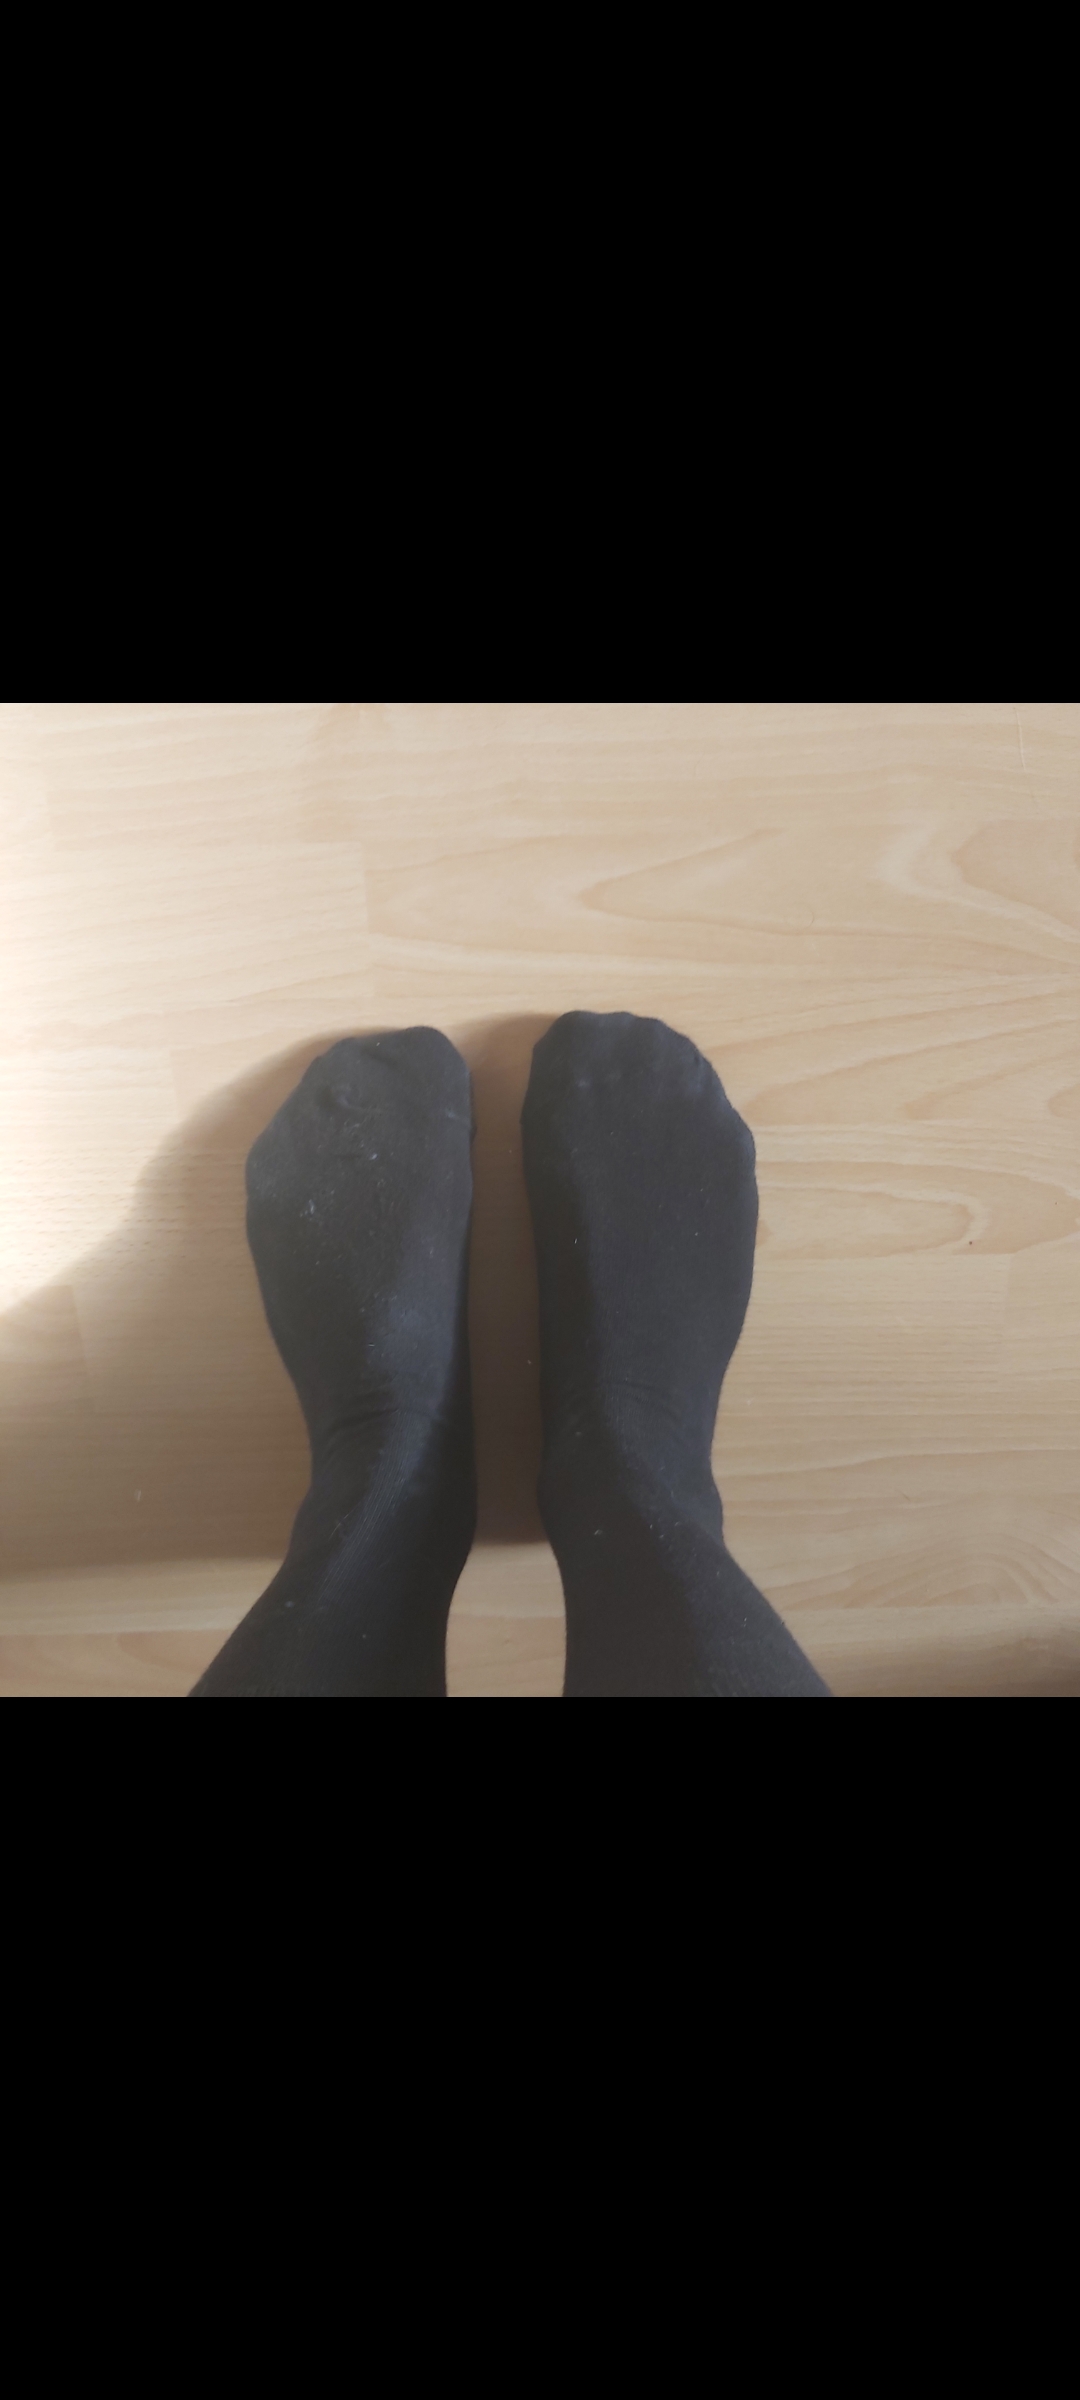 Duftende schwarze Socken